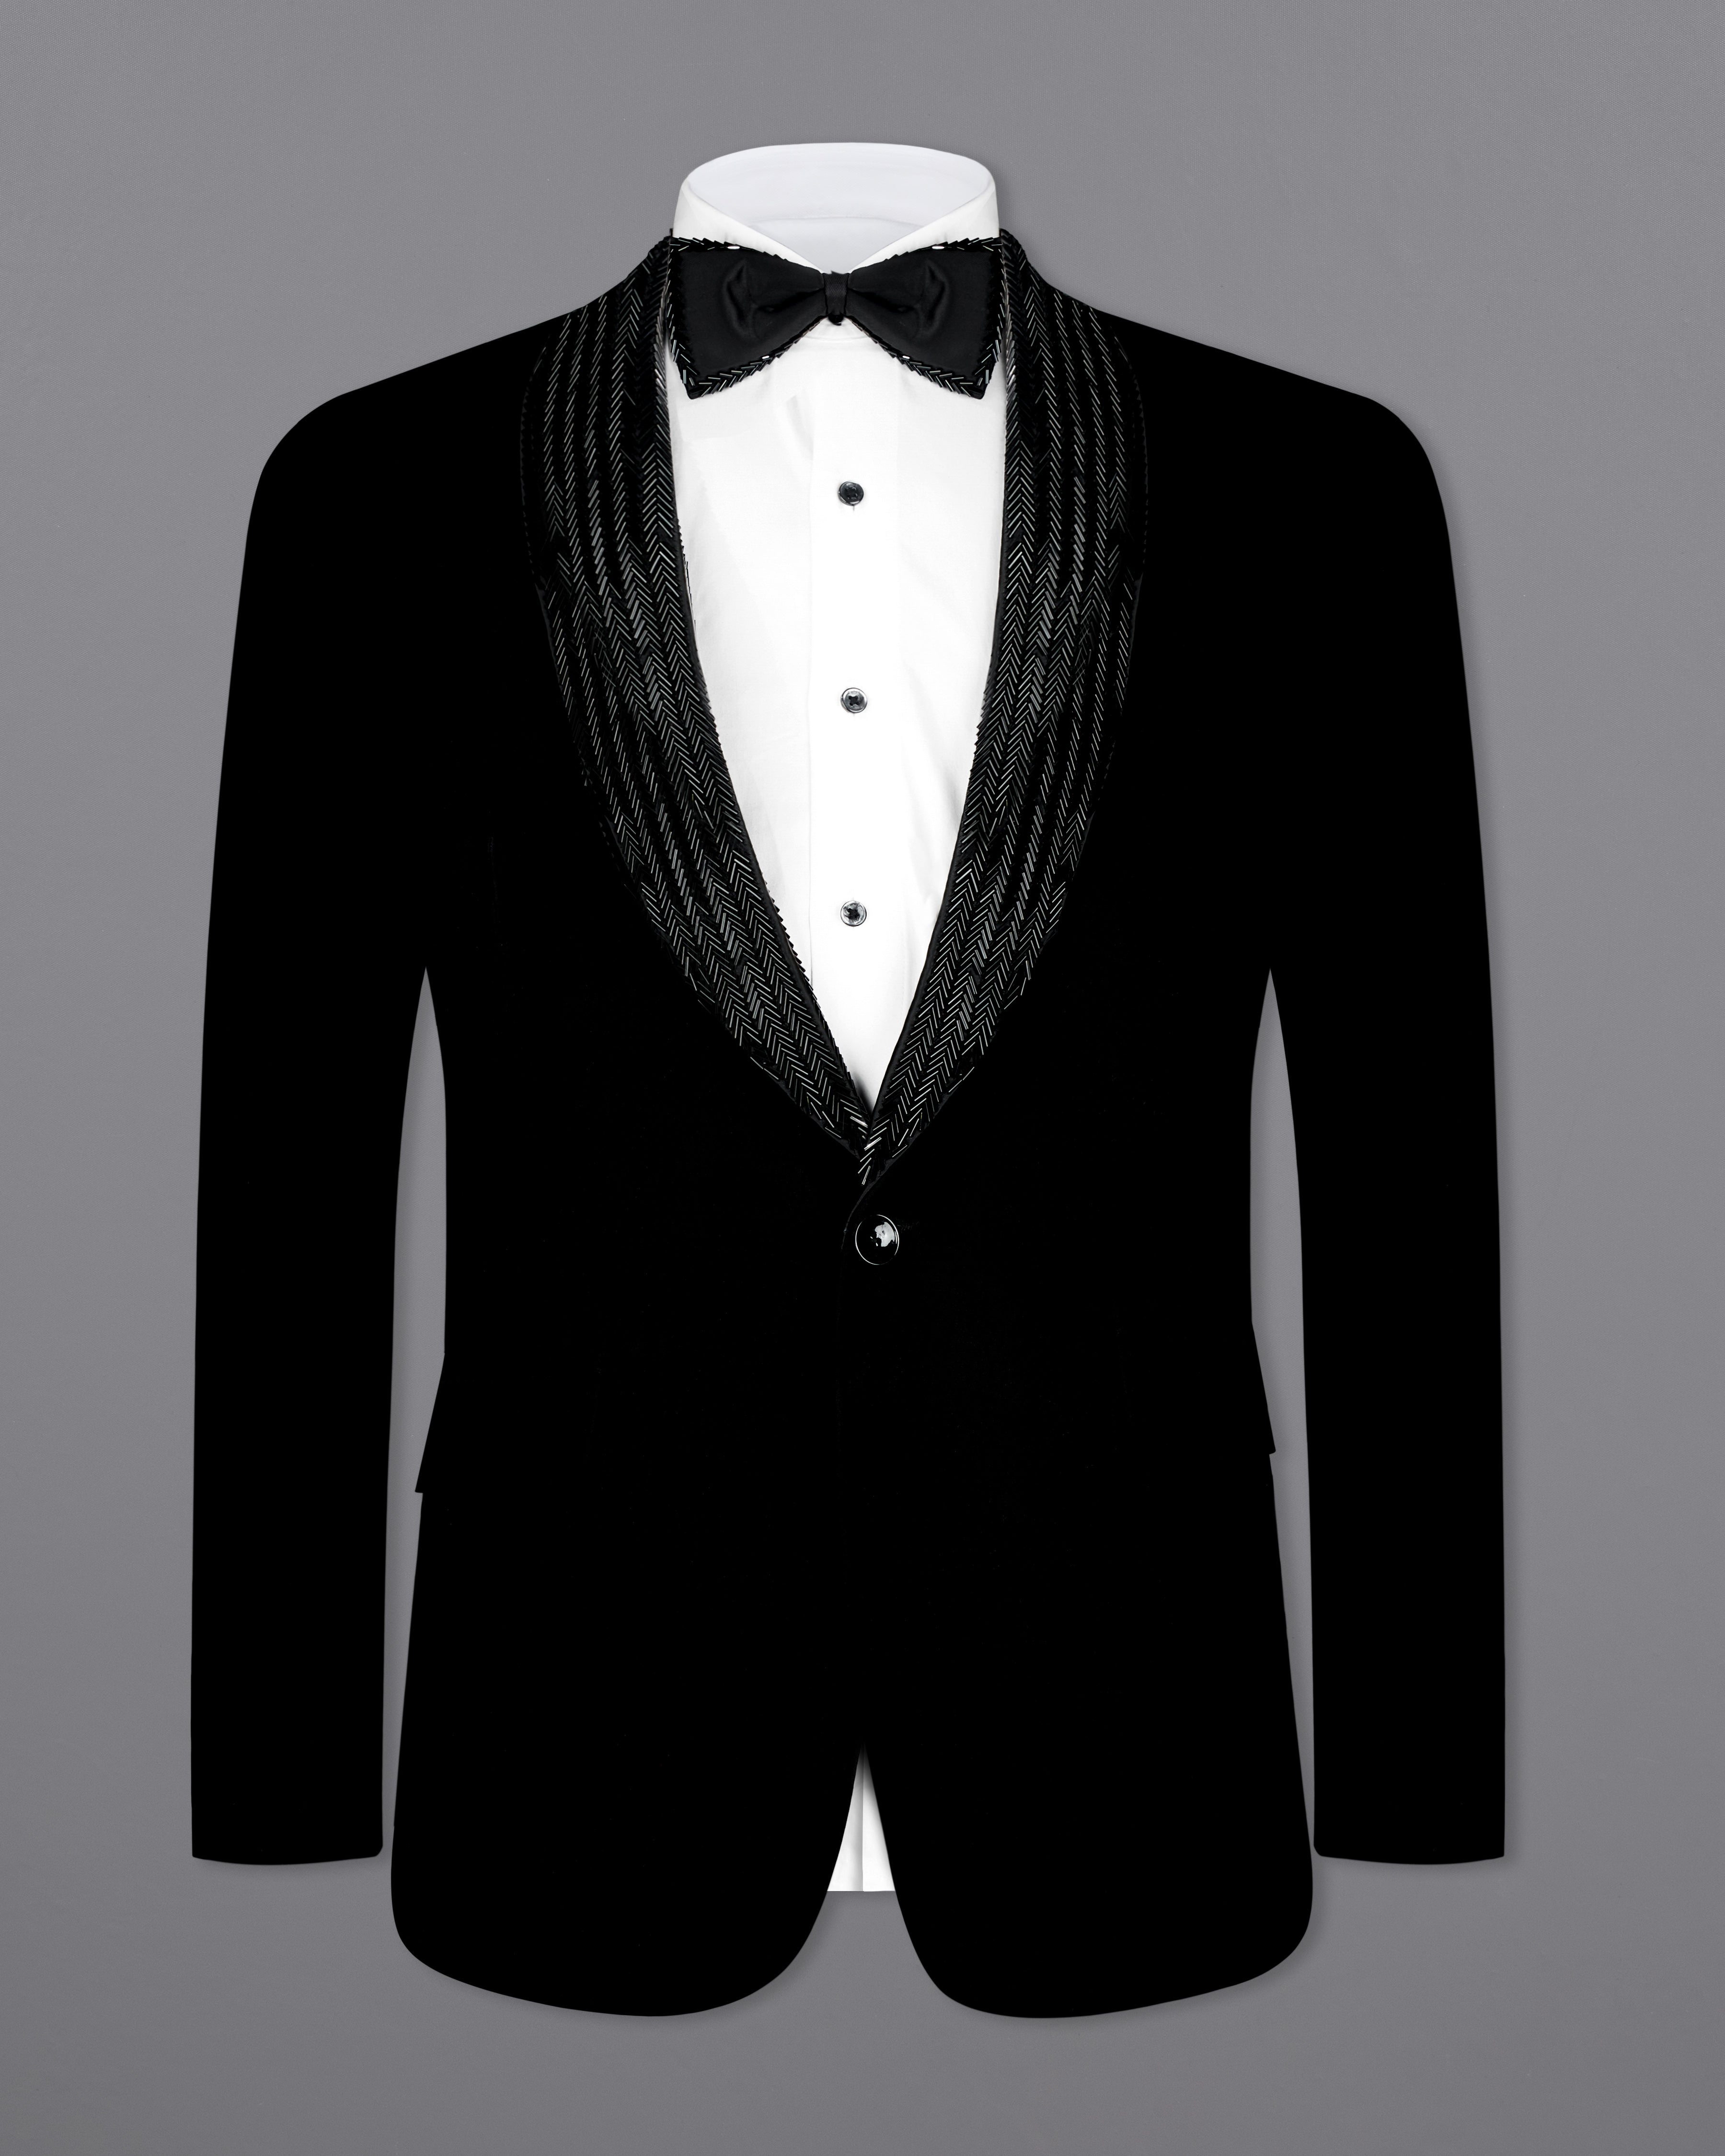 Korean Black (The Best Black We Have) Designer Suit ST2607-KWL-D14-36, ST2607-KWL-D14-38, ST2607-KWL-D14-40, ST2607-KWL-D14-42, ST2607-KWL-D14-44, ST2607-KWL-D14-46, ST2607-KWL-D14-48, ST2607-KWL-D14-50, ST2607-KWL-D14-52, ST2607-KWL-D14-54, ST2607-KWL-D14-56, ST2607-KWL-D14-58, ST2607-KWL-D14-60